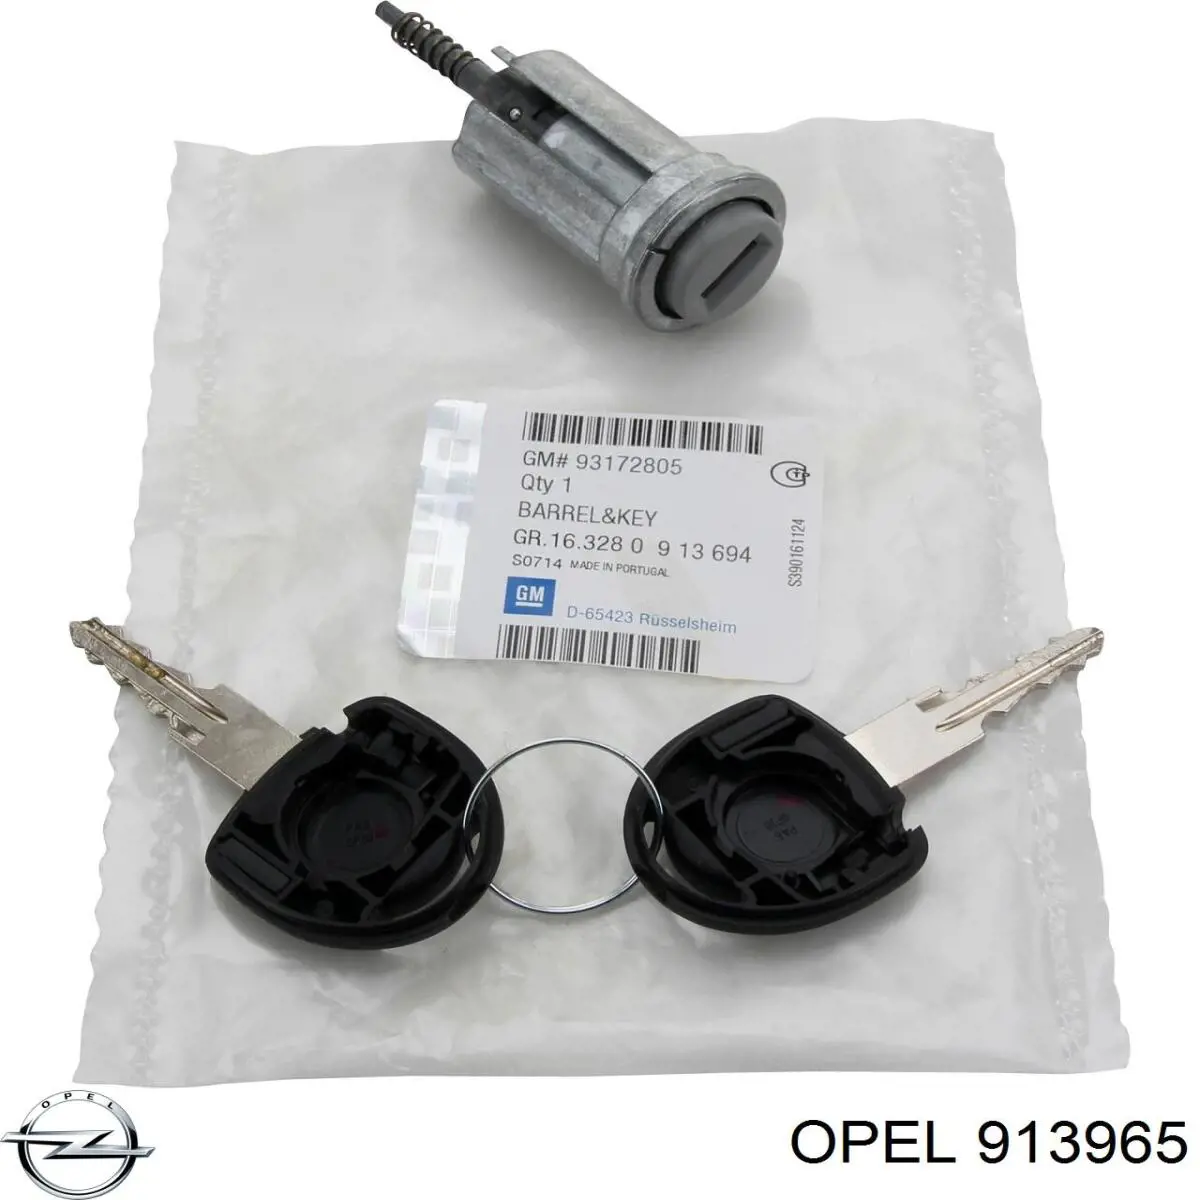 913965 Opel bombín de cerradura de encendido